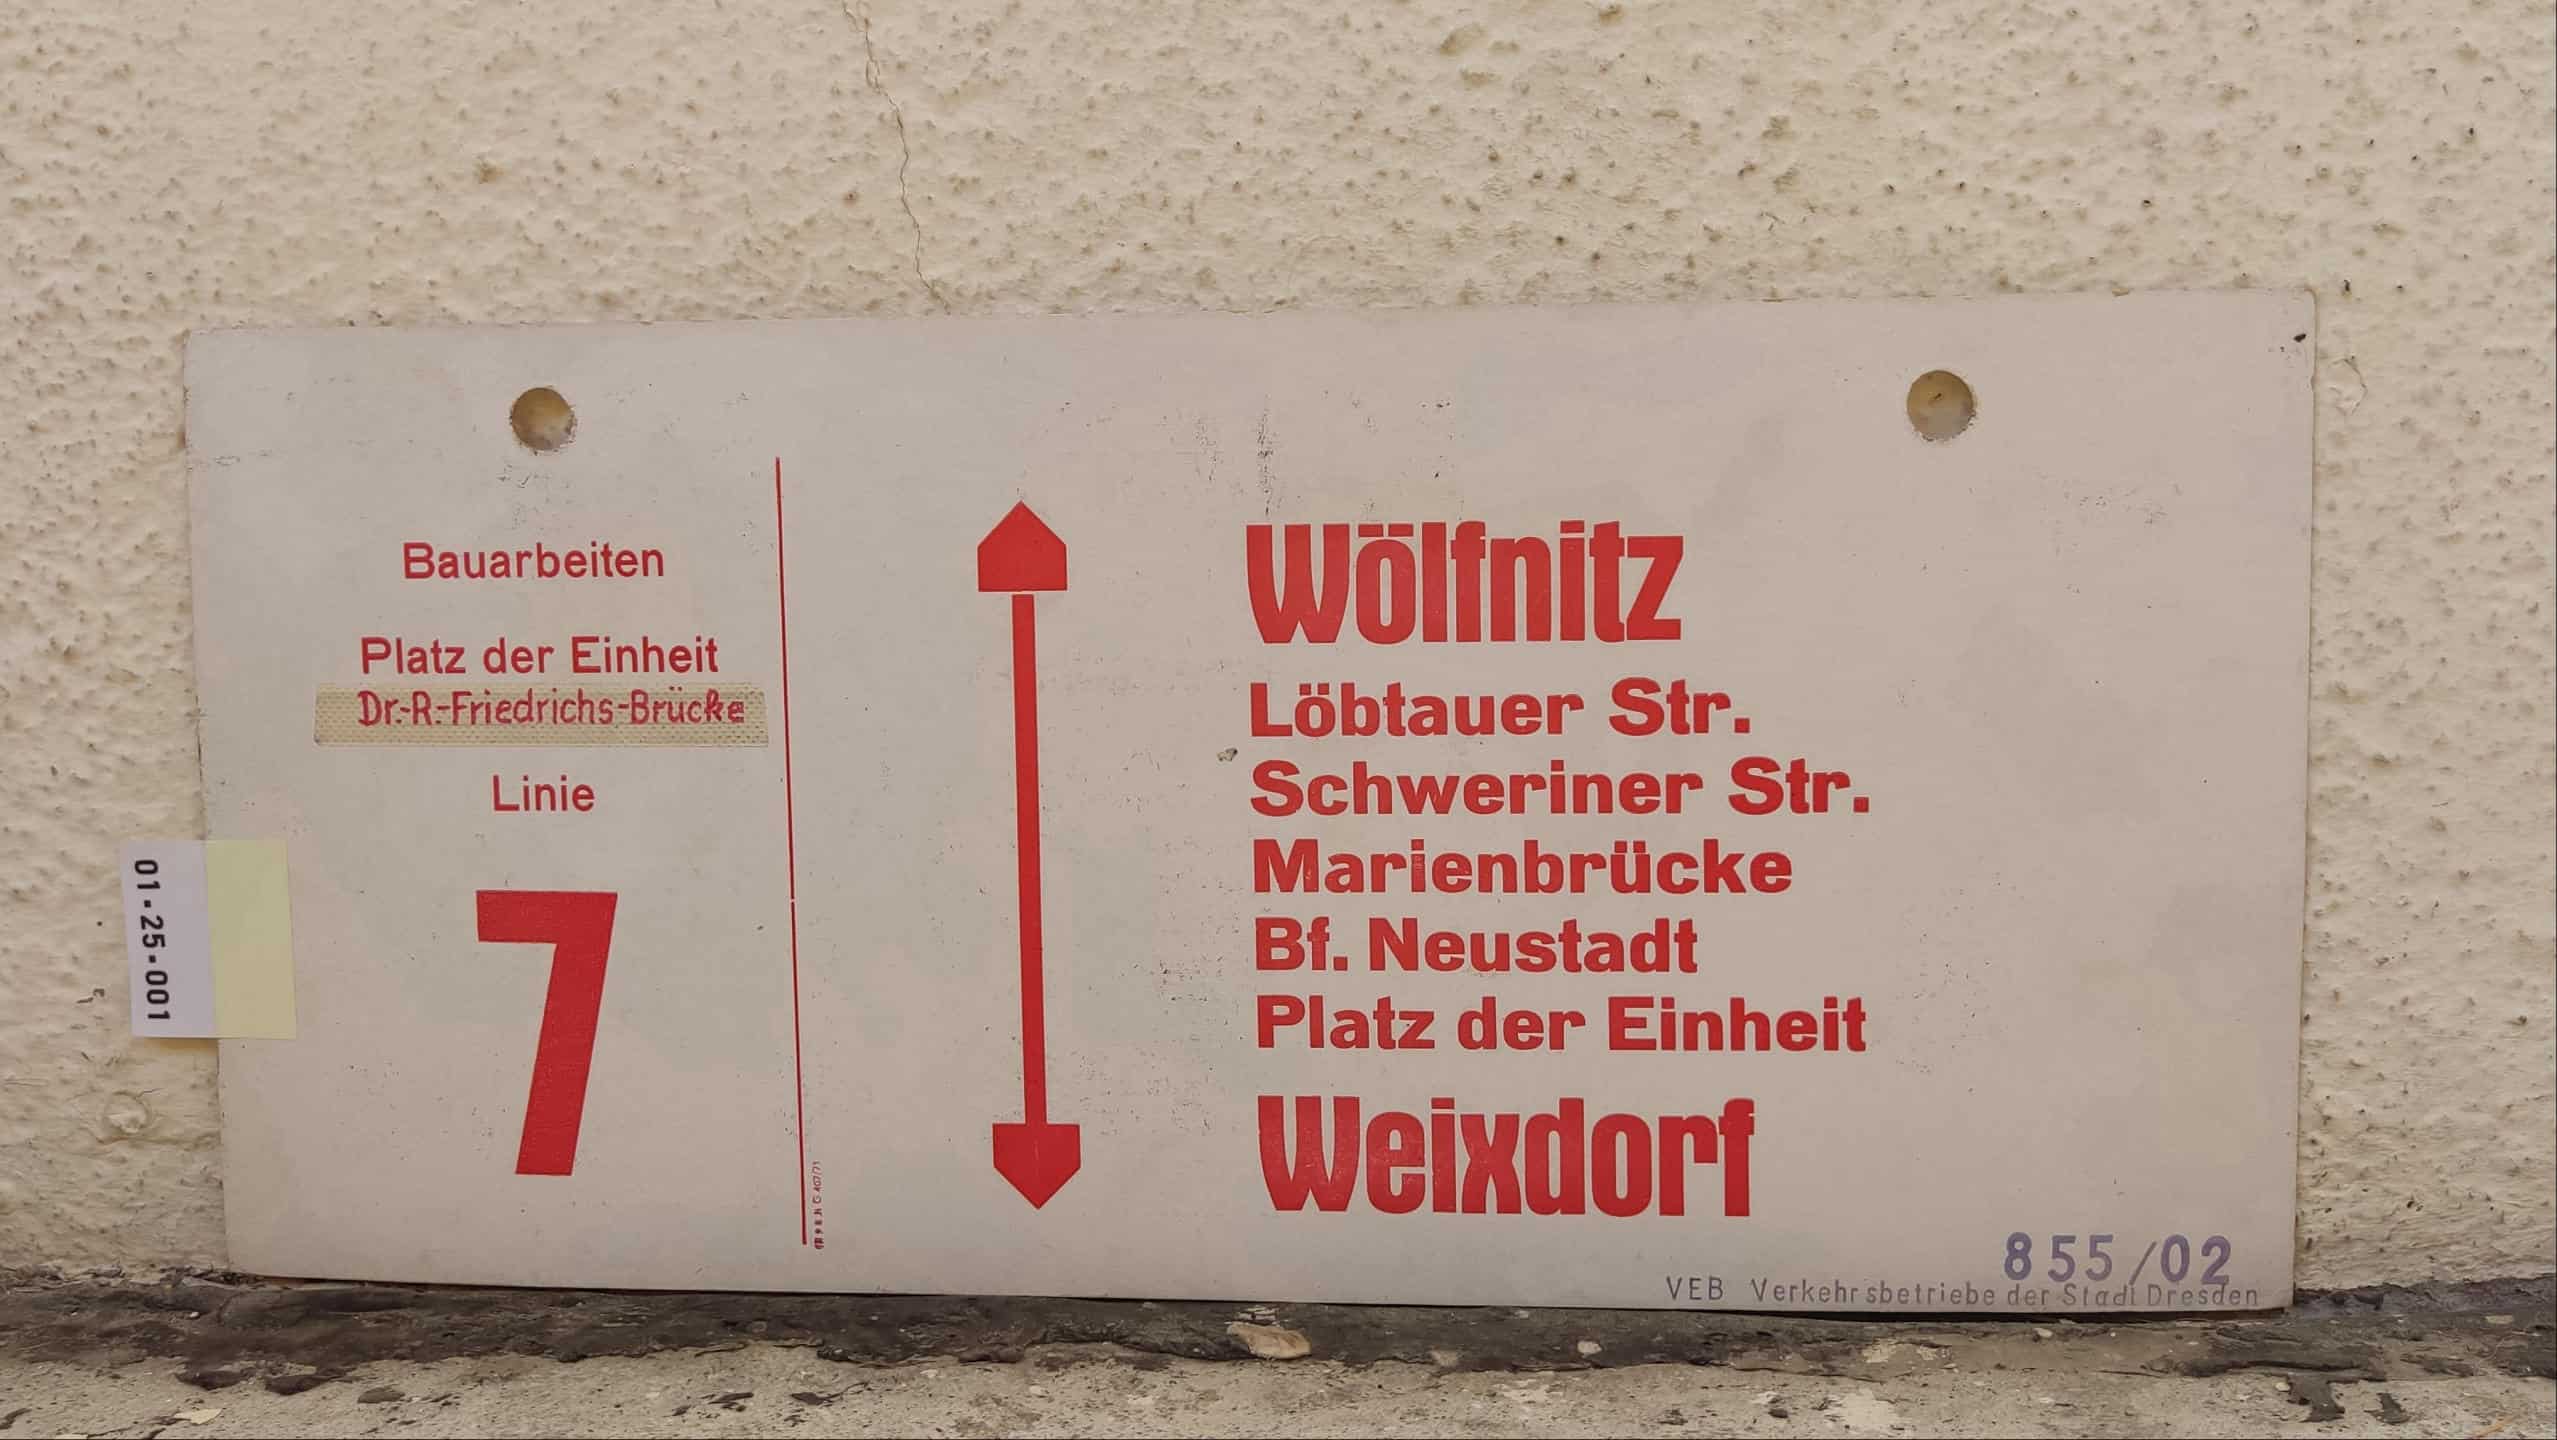 Bauarbeiten Platz der Einheit Dr.-R.-Friedrichs-Brücke Linie 7 Wölfnitz – Weixdorf #1